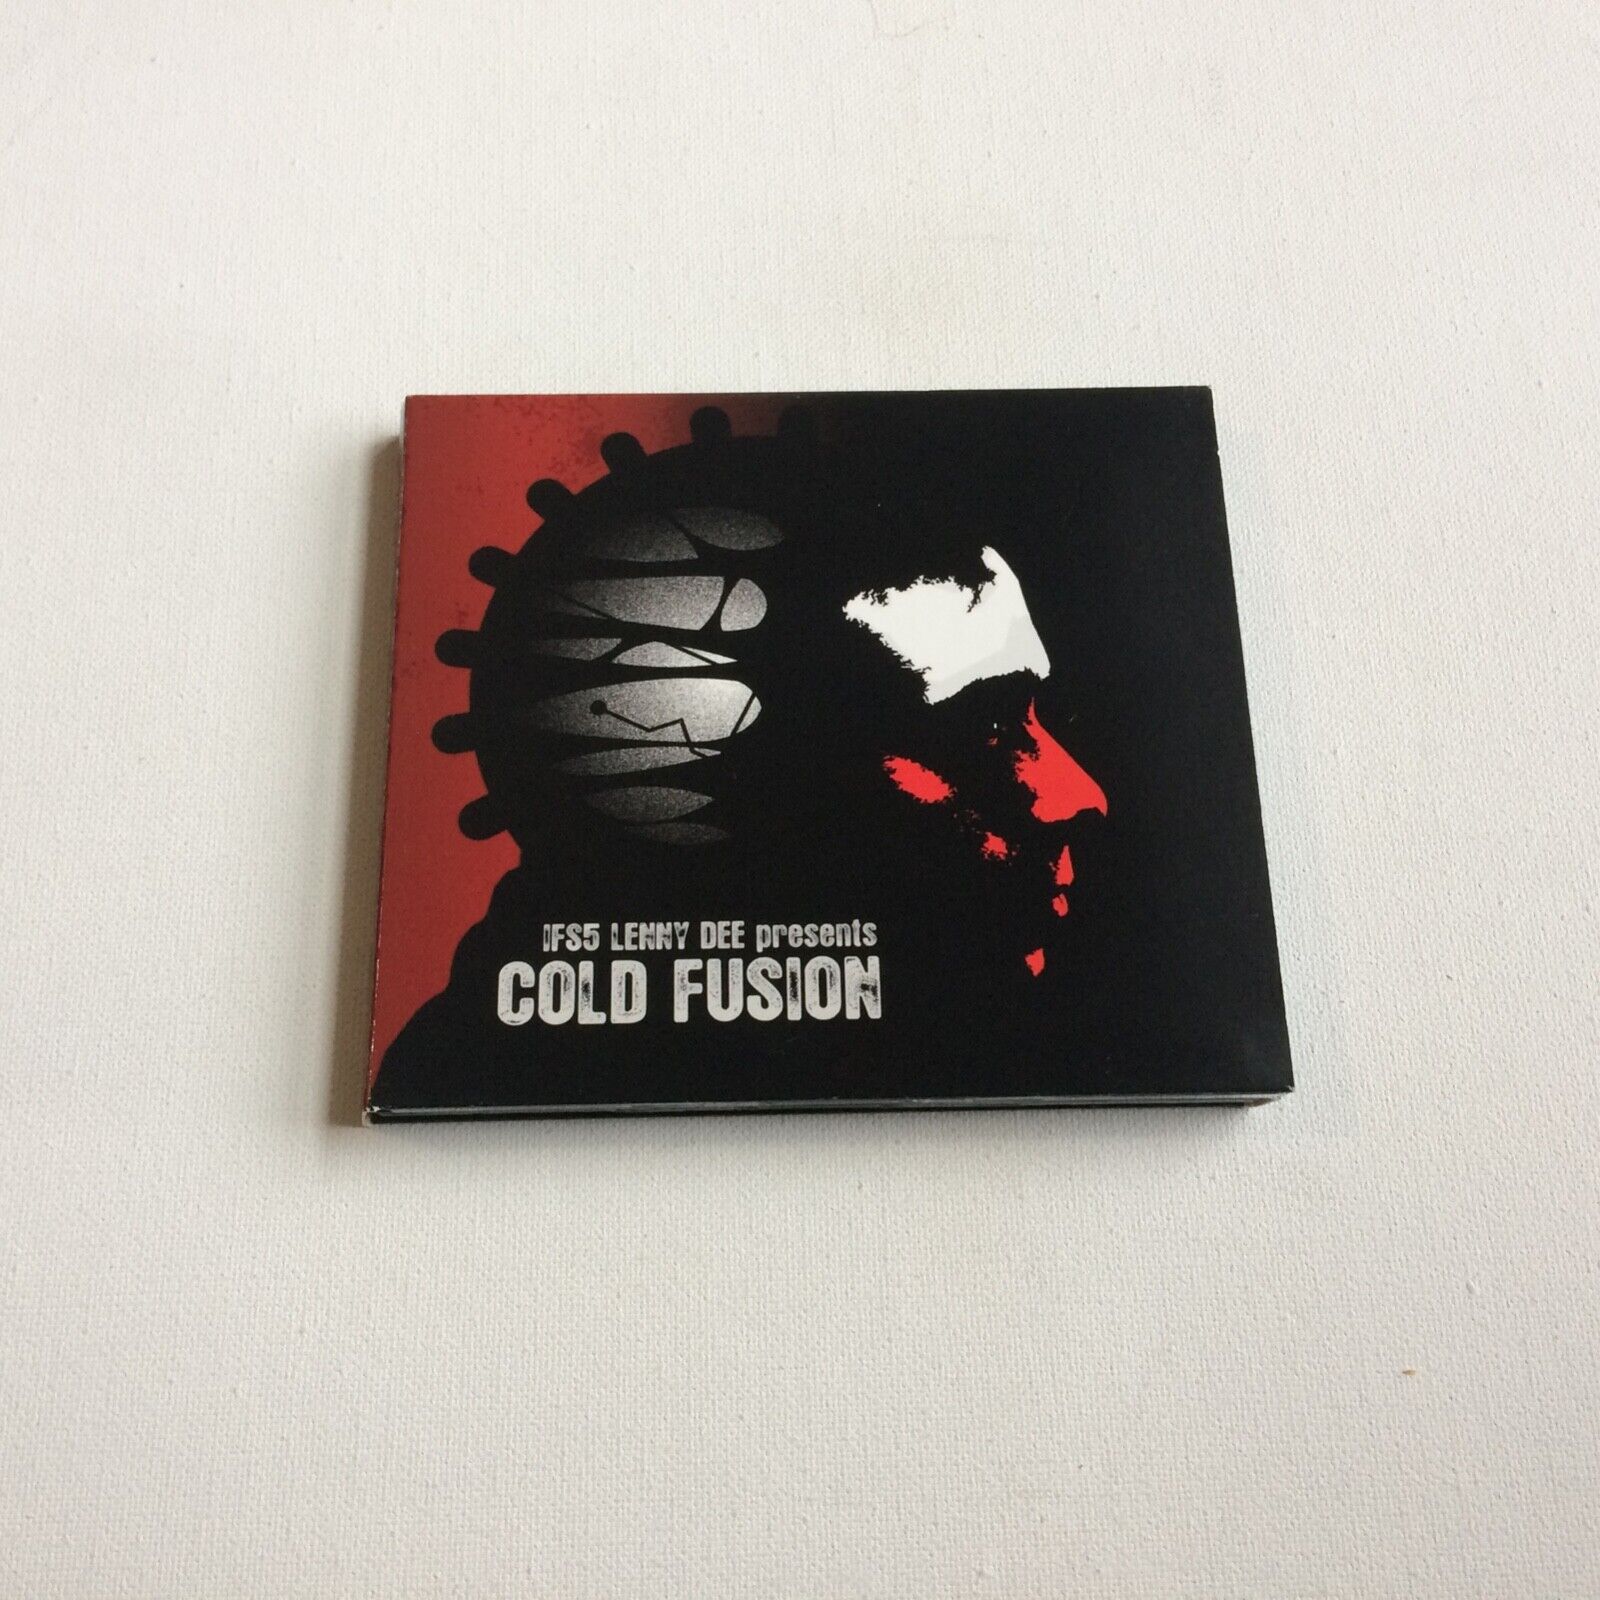 Lenny Dee IFS5 Cold Fusion 2 x CD RARE HTF Hardcore Gabber Techno Industrial '08